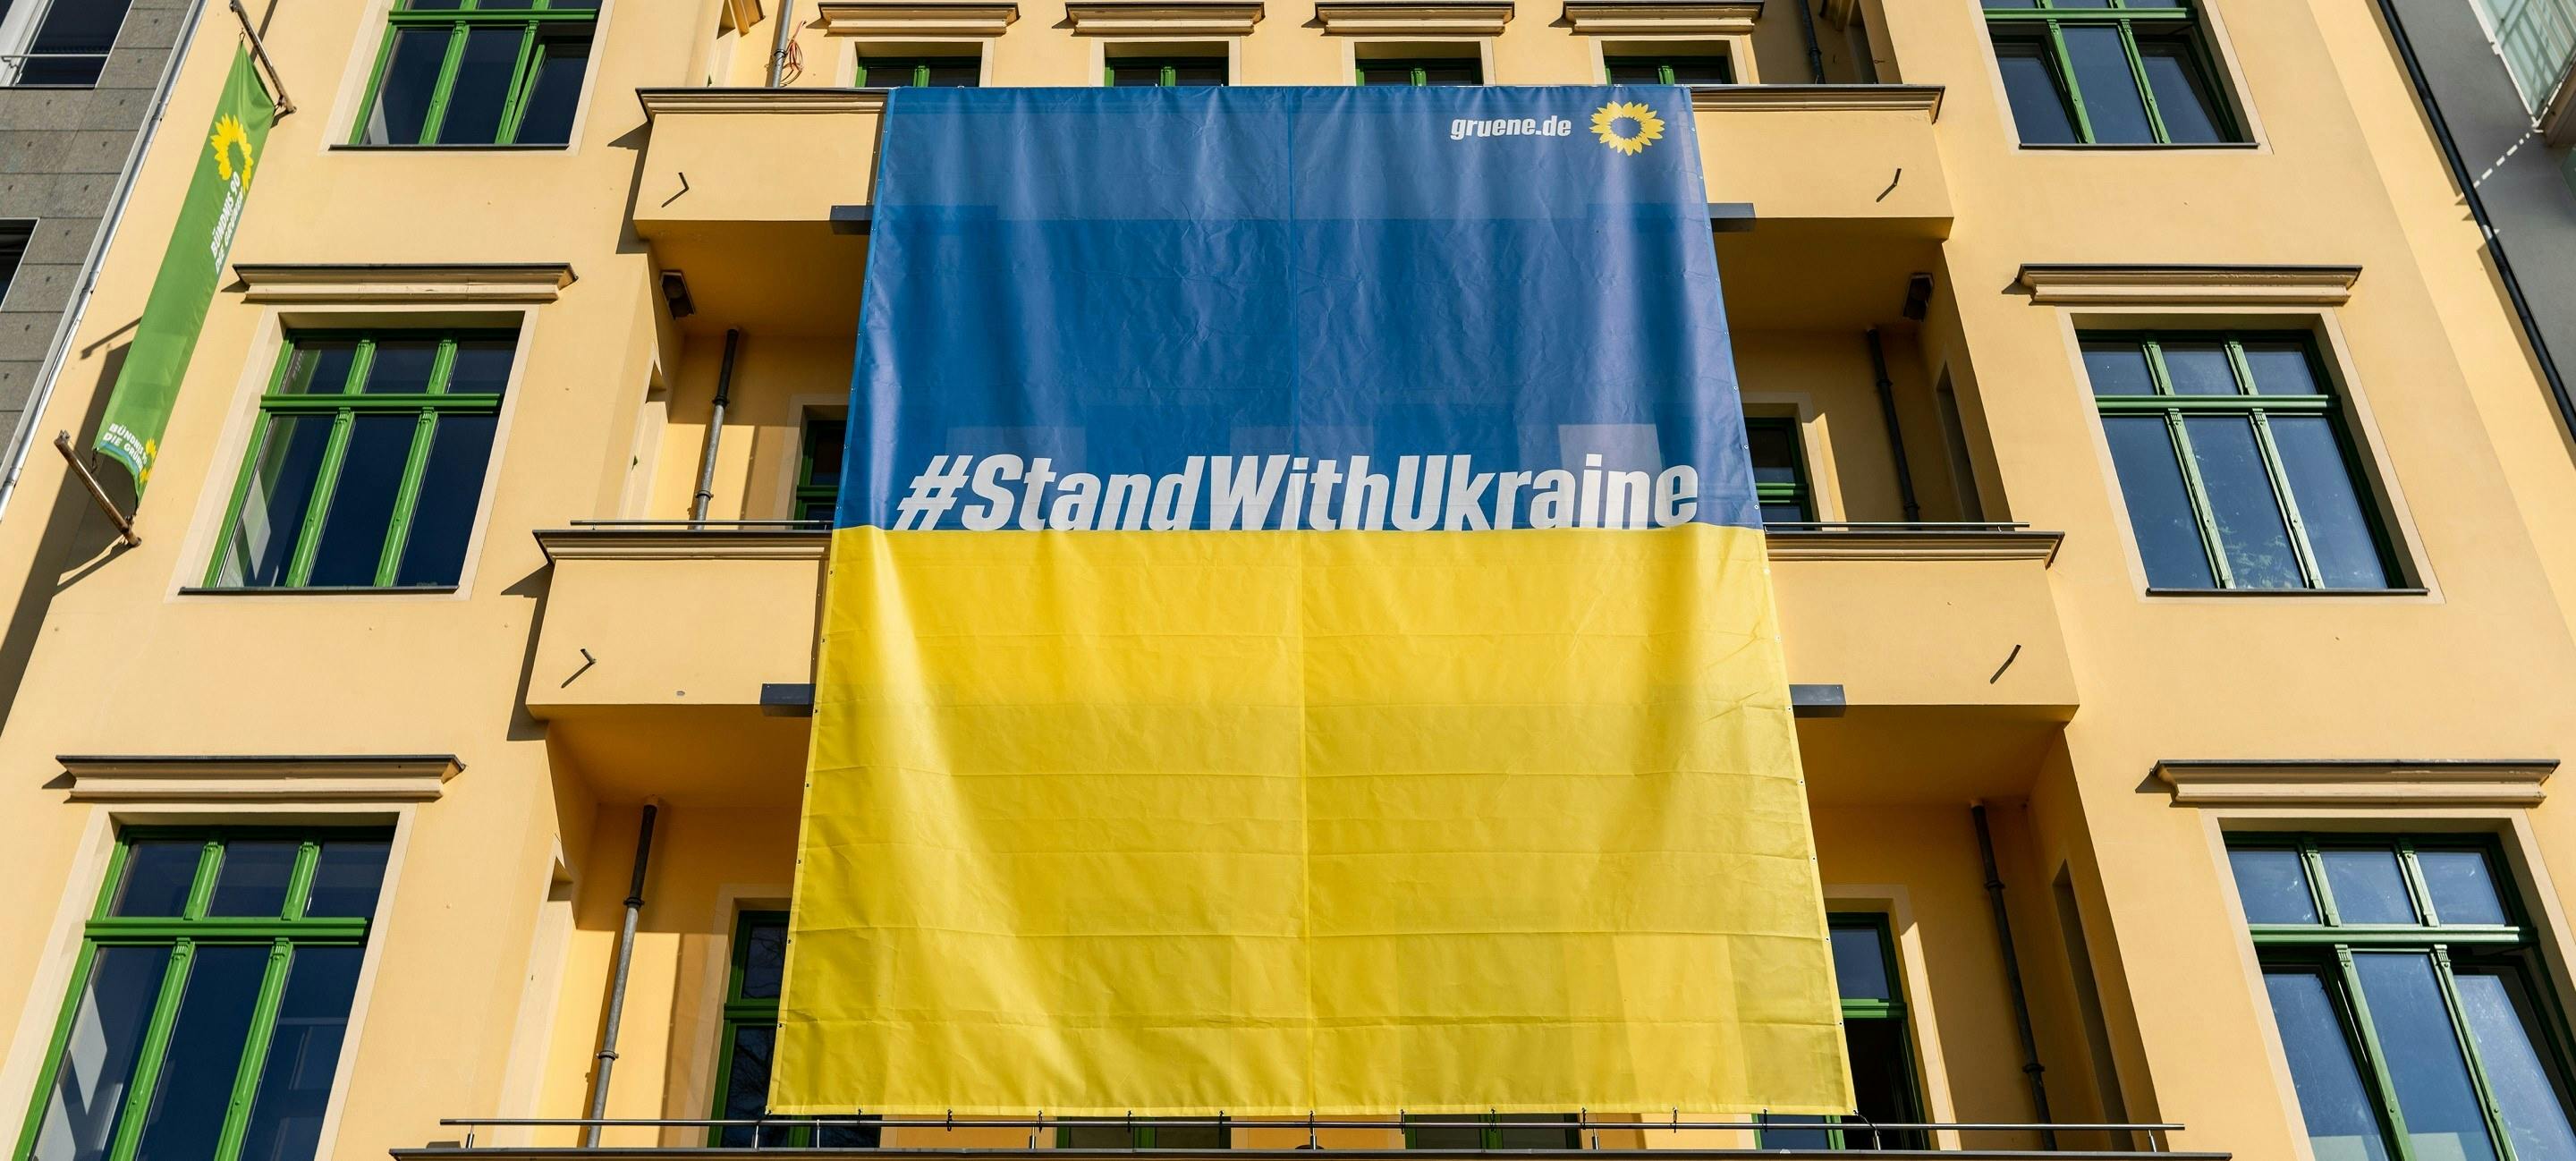 Banner in blau und rot mit der Aufschrift "#StandWithUkraine" hängt an der Fassade eines gelben Hauses.